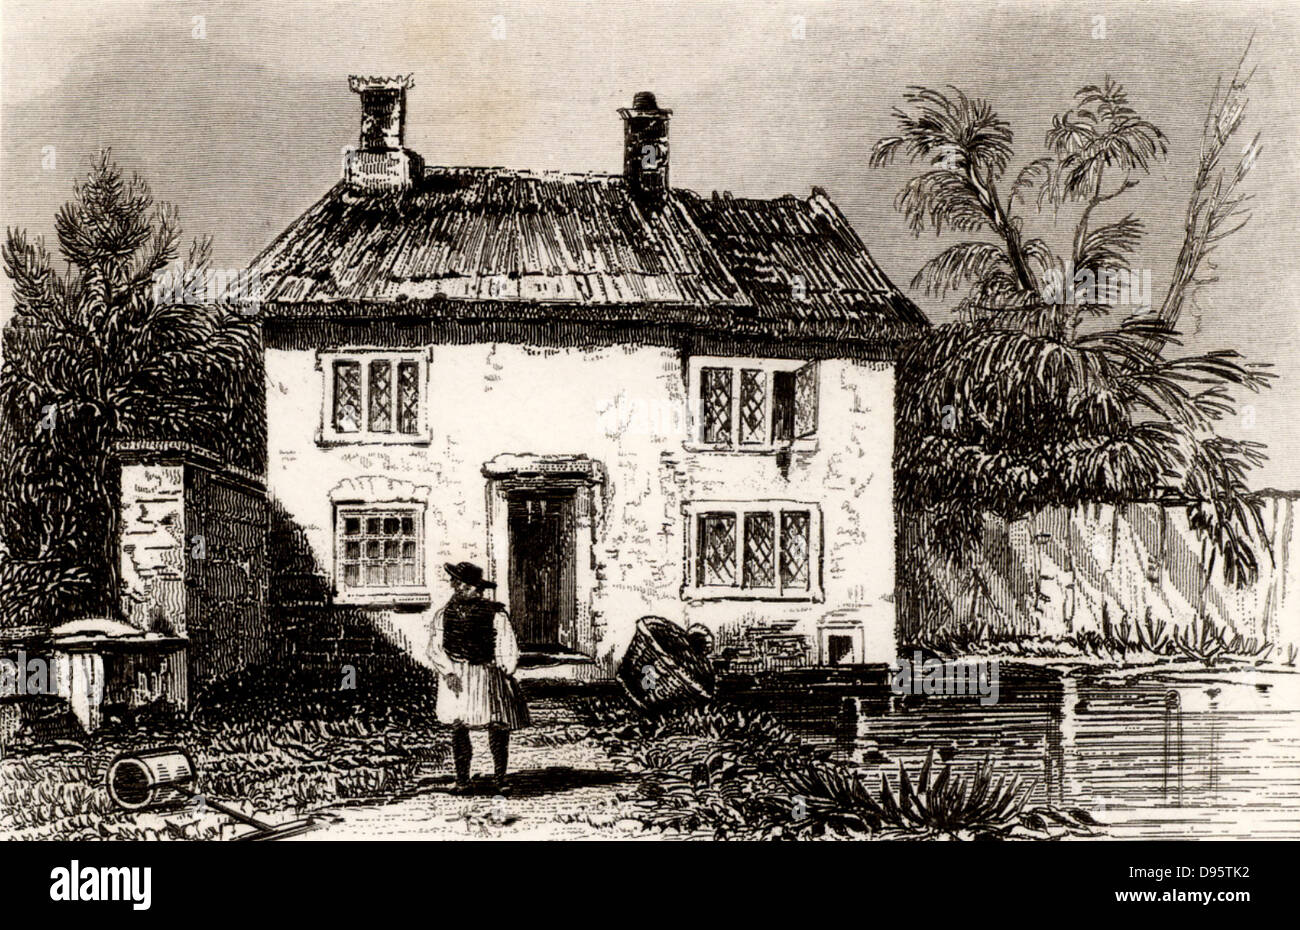 Cottage a Wrington in North Somerset vicino a Bristol, Inghilterra, il luogo di nascita di John Locke (1632-1704) inglese filosofo e scienziato, uno dei fondatori dell'Illuminismo. Incisione da 'Inghilterra e Galles delineata' da Thomas Dugdale (Londra, c1840). Foto Stock